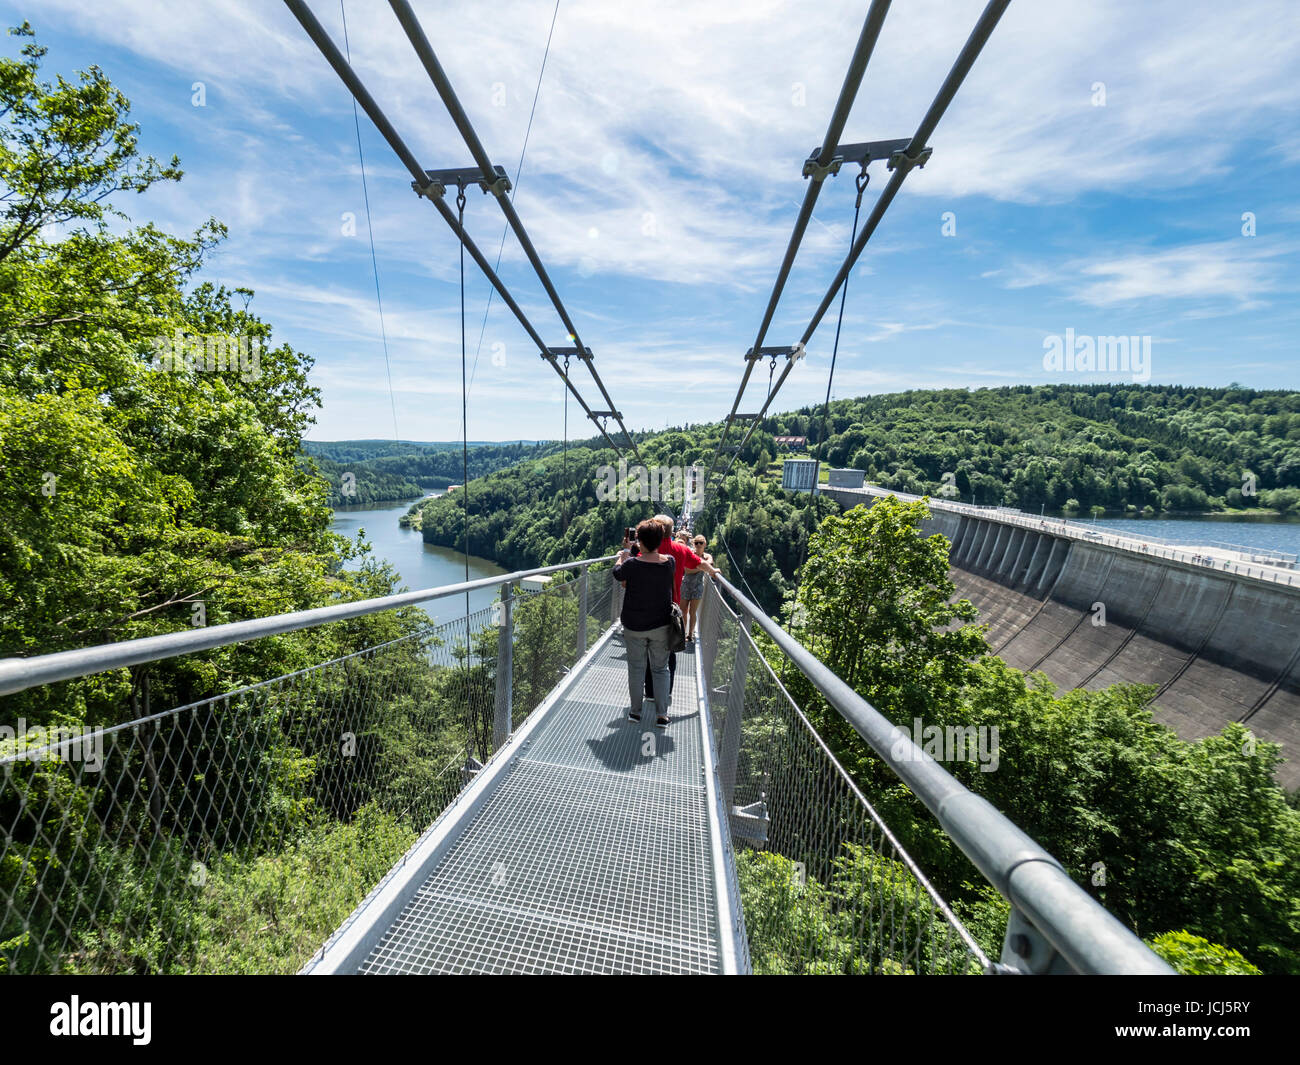 Rappbode réservoir d'eau, pont suspendu le plus long du monde entier (pour juin 2017) , 453 m, longueur ouvert nommé Titan RT, Rappbode, Harz, Allemagne Banque D'Images